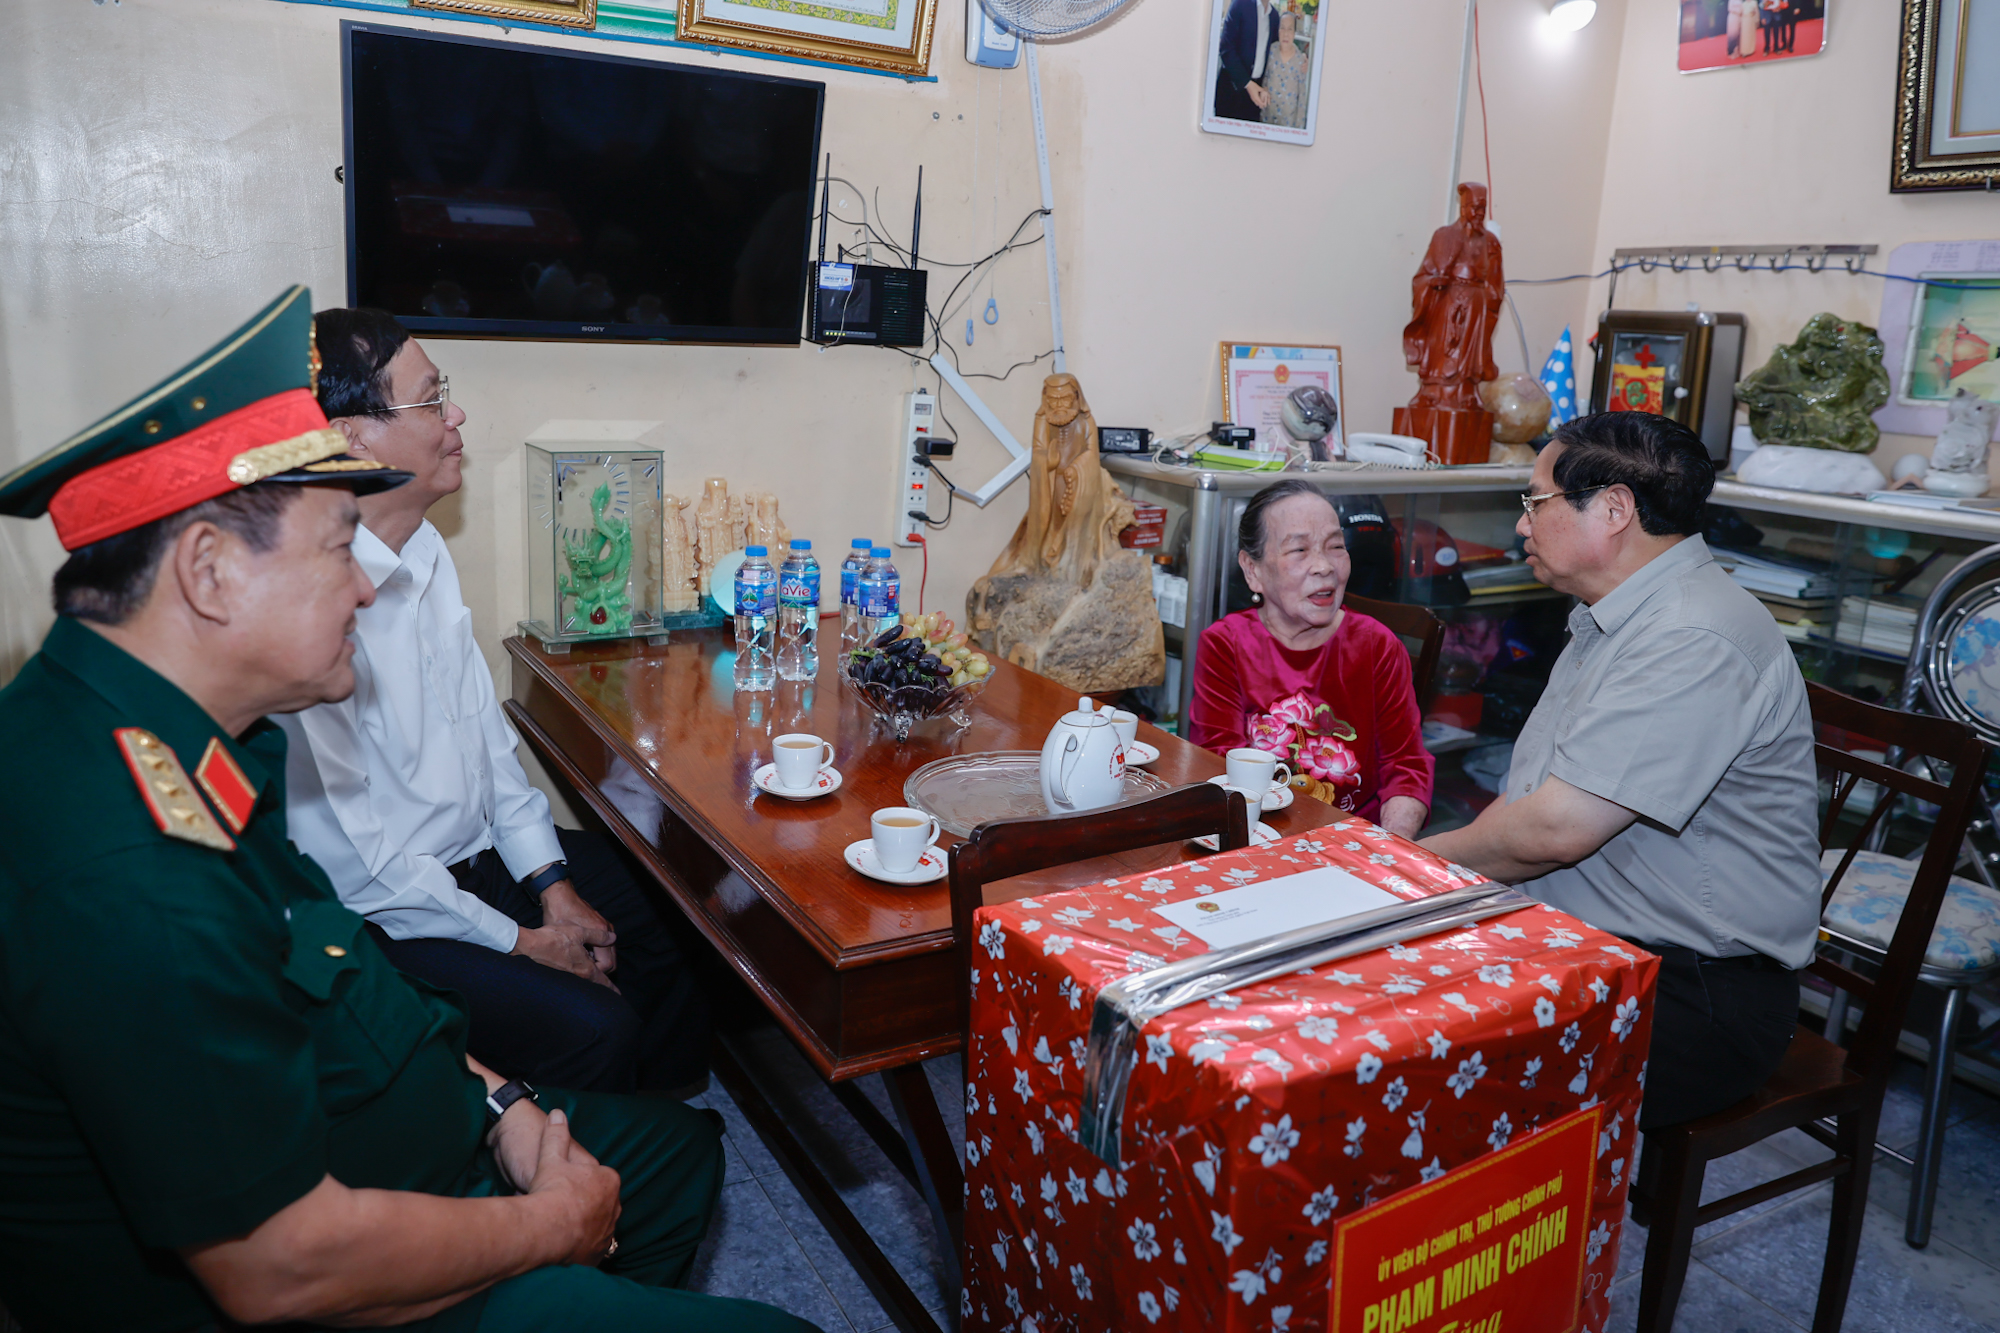 Thủ tướng Phạm Minh Chính chúc bà Hồ Thị Lượm sức khỏe, tiếp tục động viên con cháu, cộng đồng tích cực học tập, lao động, sản xuất, tham gia các phong trào thi đua yêu nước - Ảnh: VGP/Nhật Bắc